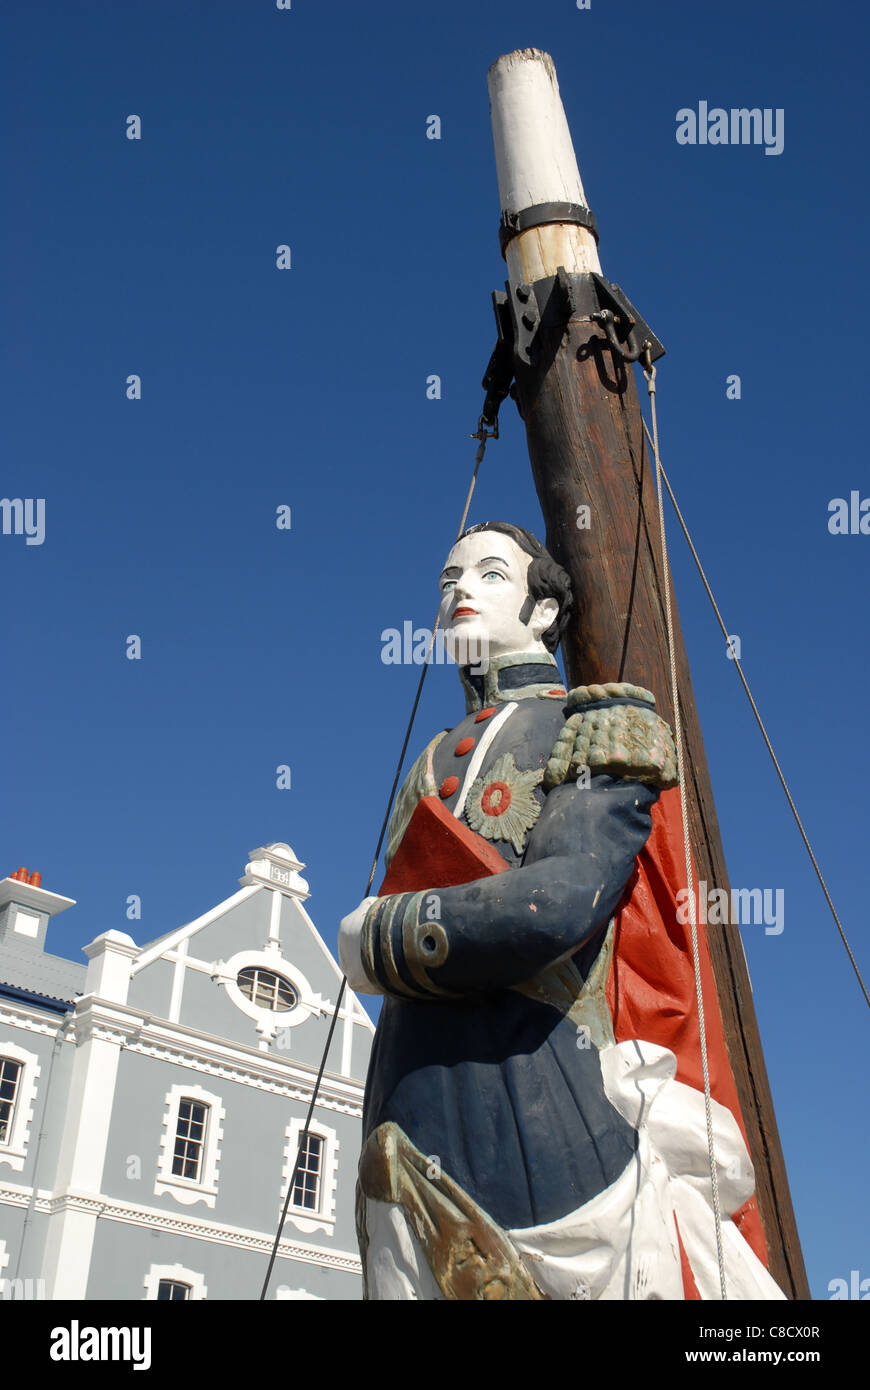 Proue sculpté sur l'arc de navire, port de commerce de l'Afrique, V&A waterfront, Cape Town, Western Cape, Afrique du Sud Banque D'Images